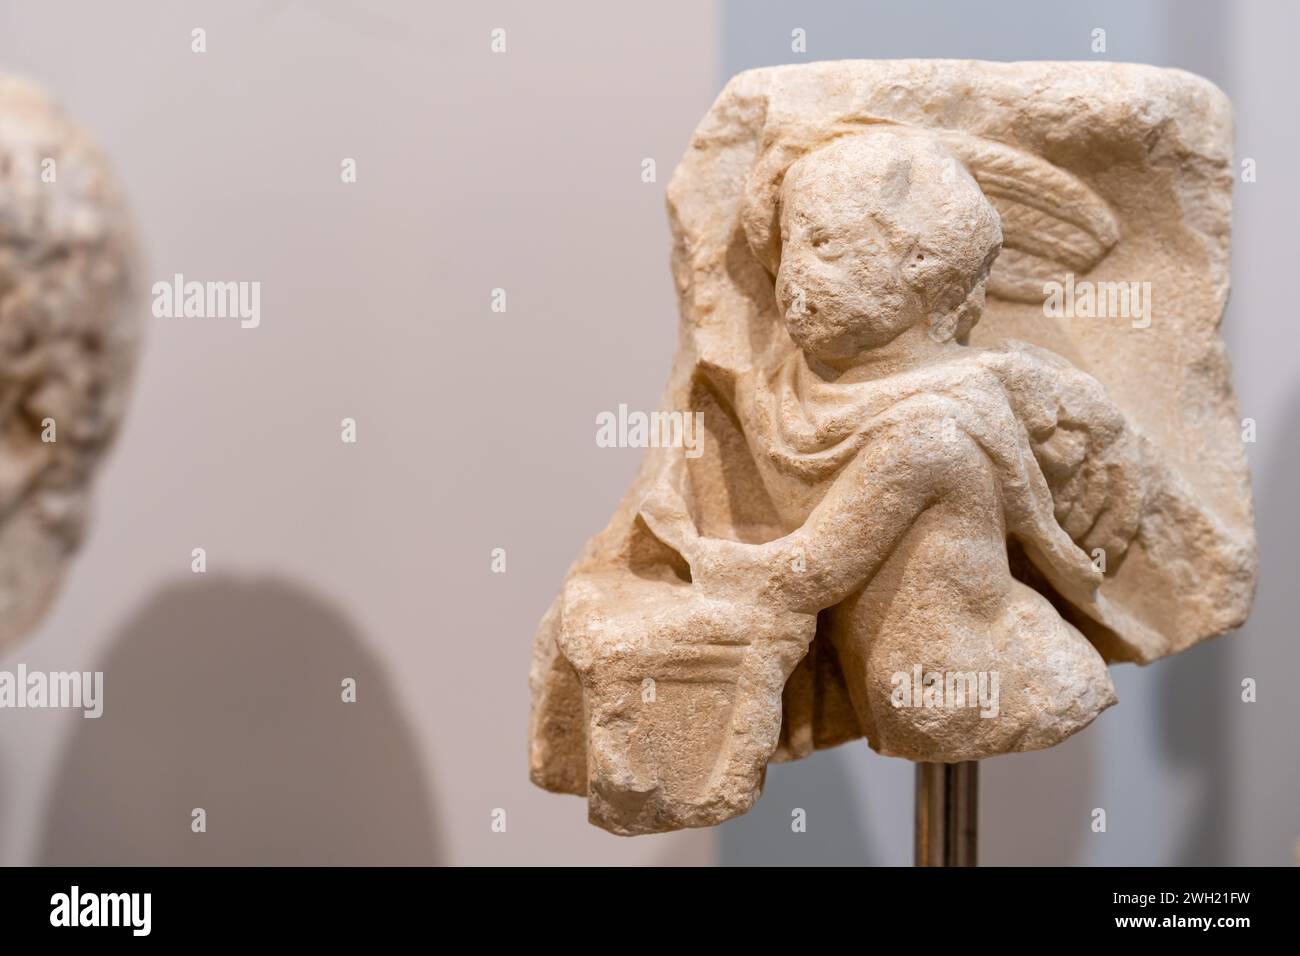 Nahaufnahme eines in Stein gemeißelten Stücks einer antiken Skulptur, die einen kleinen Engel darstellt Stockfoto